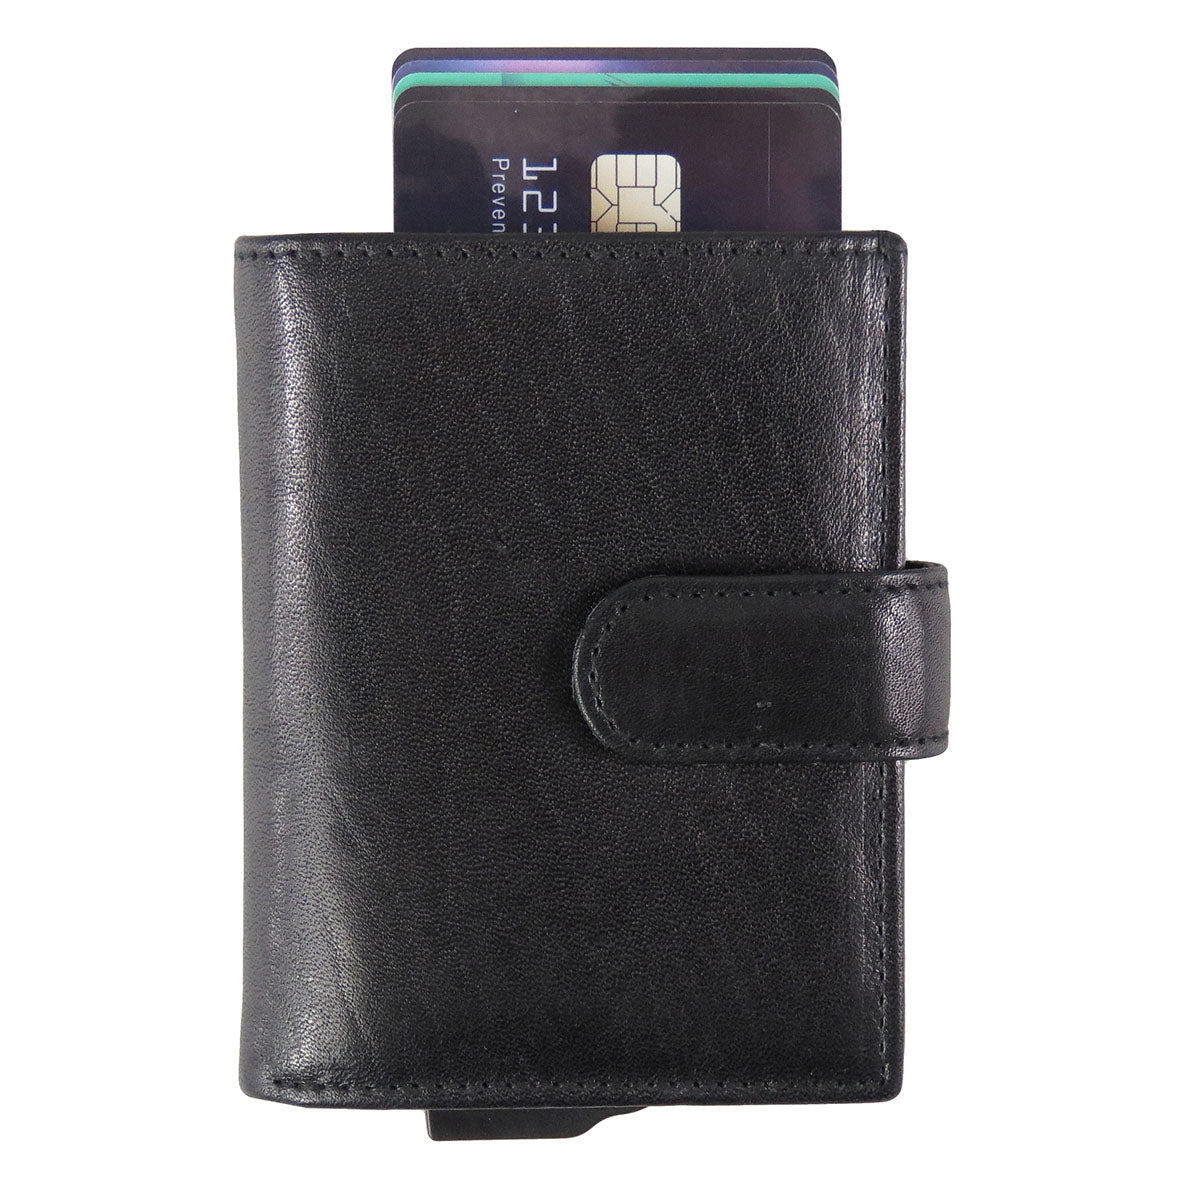 [寄海外] CardHoda - RFID 防盜卡片套真皮銀包（藍色 / 黑色 / 啡色 / 淺啡 / 灰色）18-1097-P04001